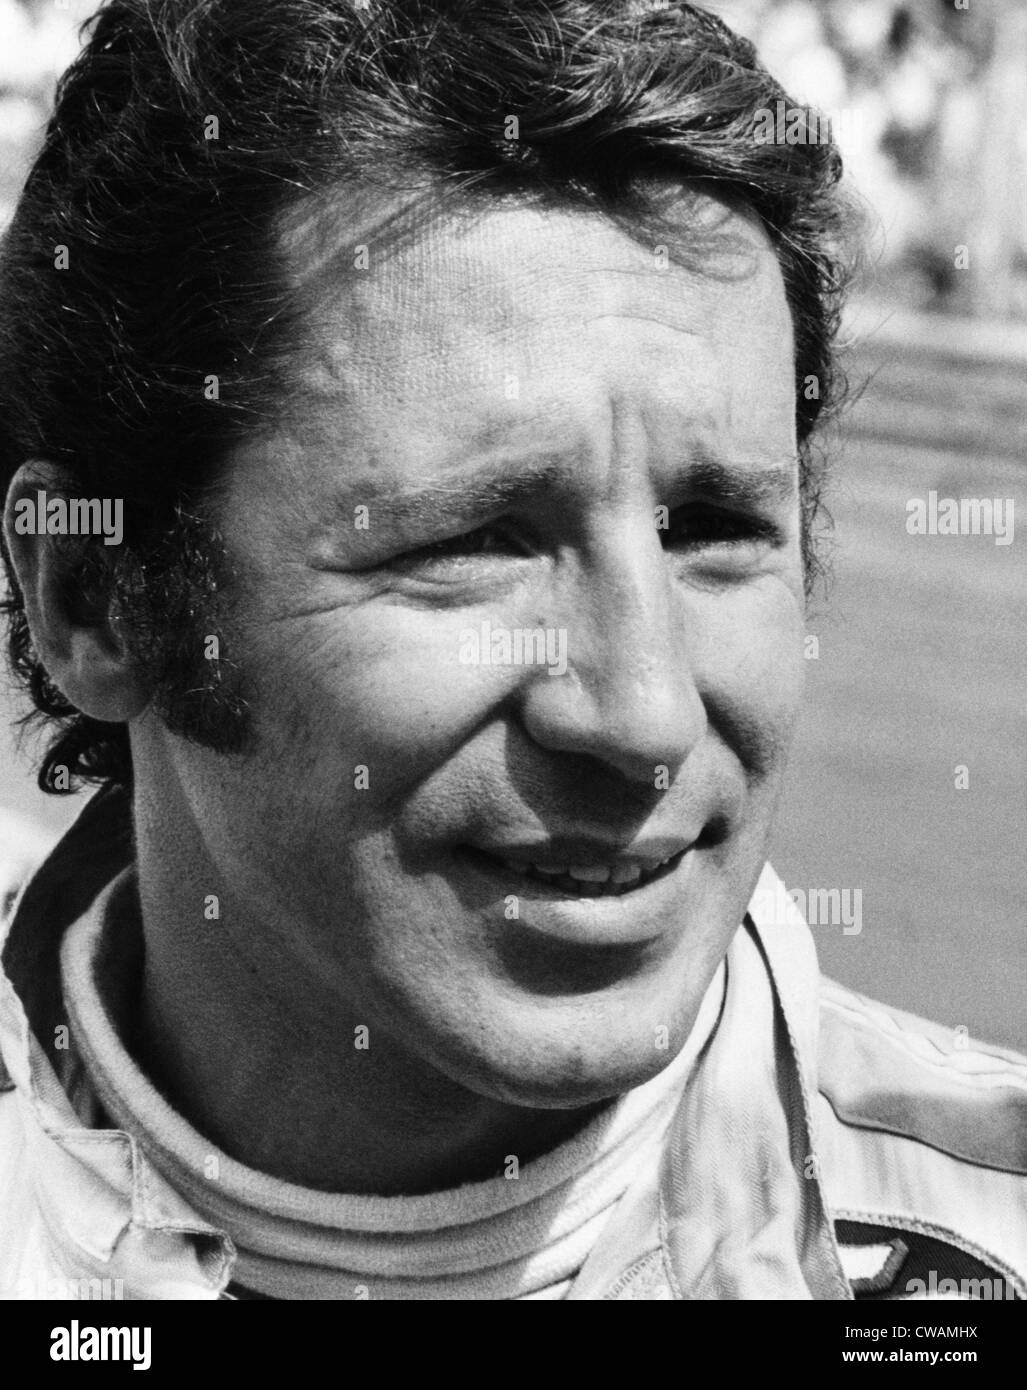 Mario Andretti, 1971. Courtesy: CSU Archives/Everett Collection Stock Photo